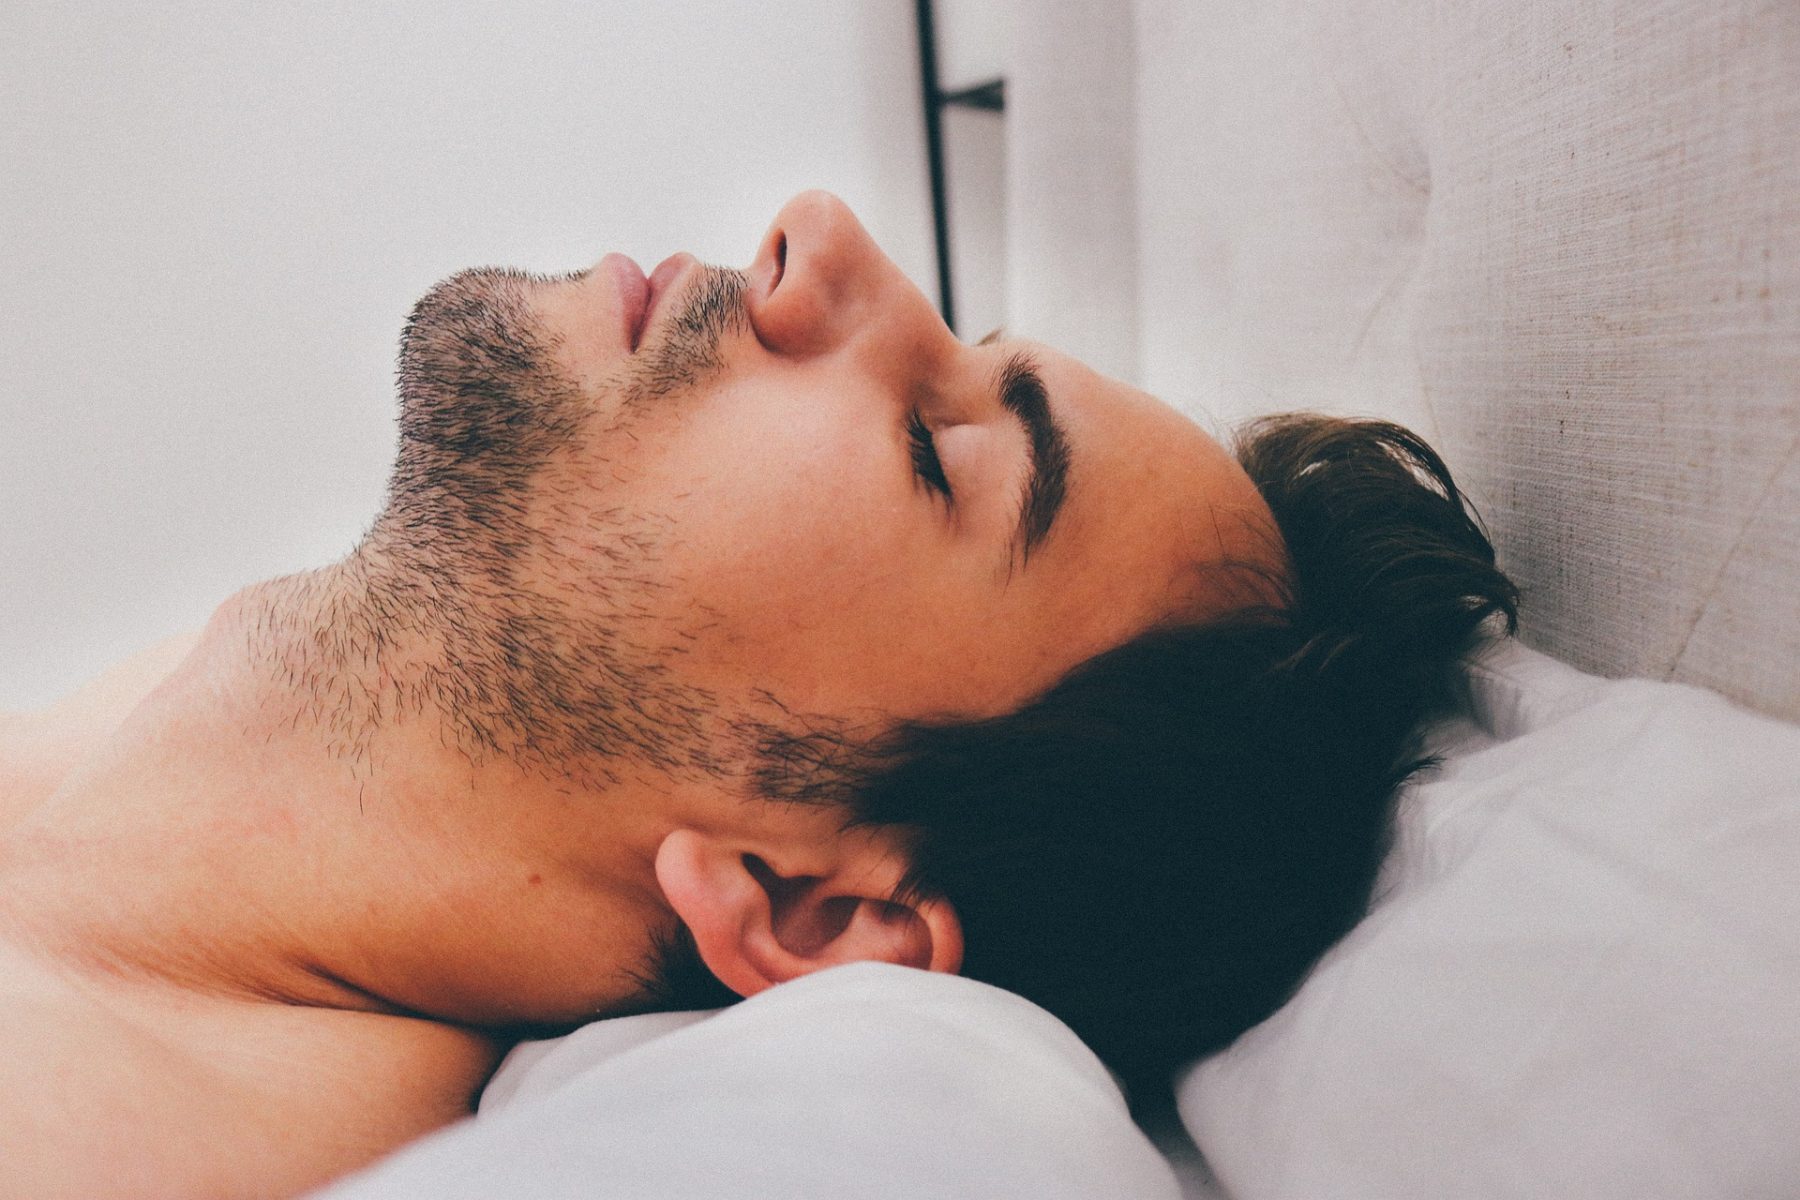 Υπνική άπνοια: Ποιες είναι οι καλύτερες στάσεις ύπνου για να την αντιμετωπίσετε;